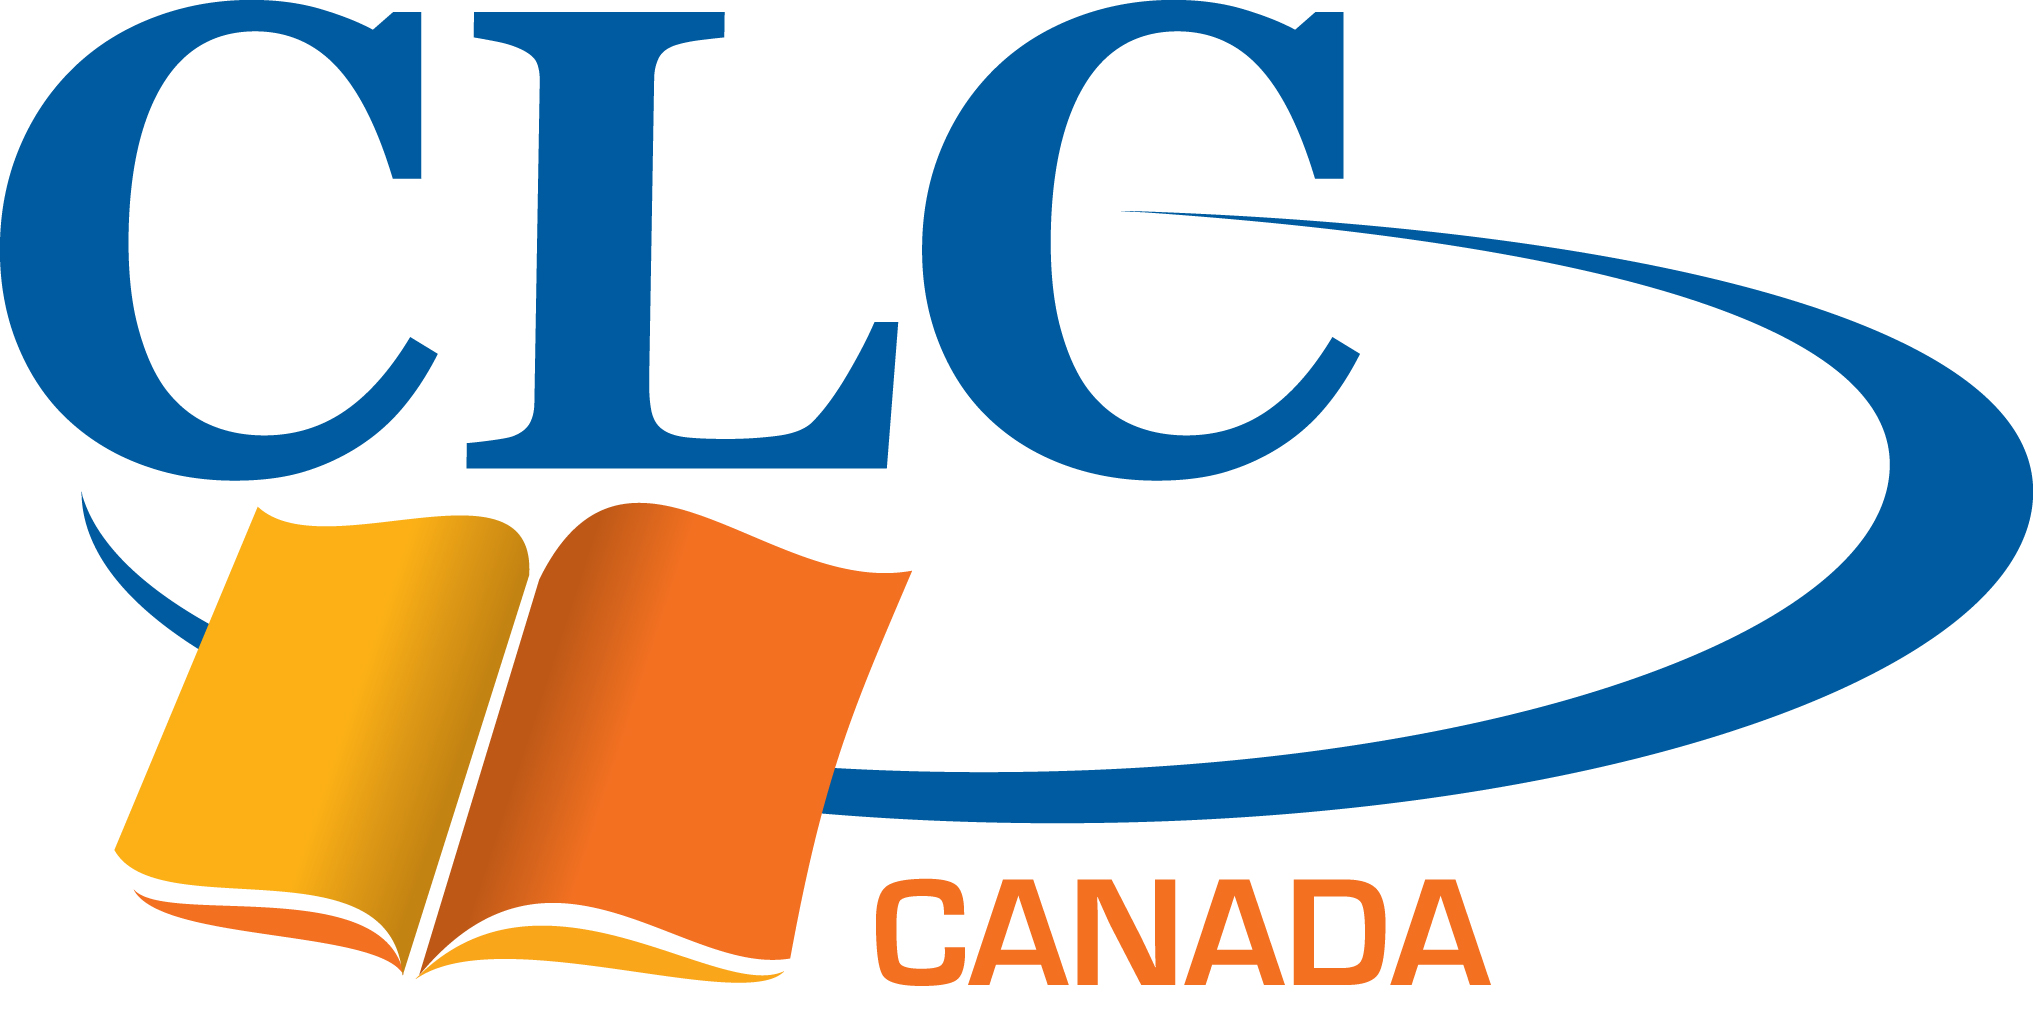 Centre de littérature chrétienne logo